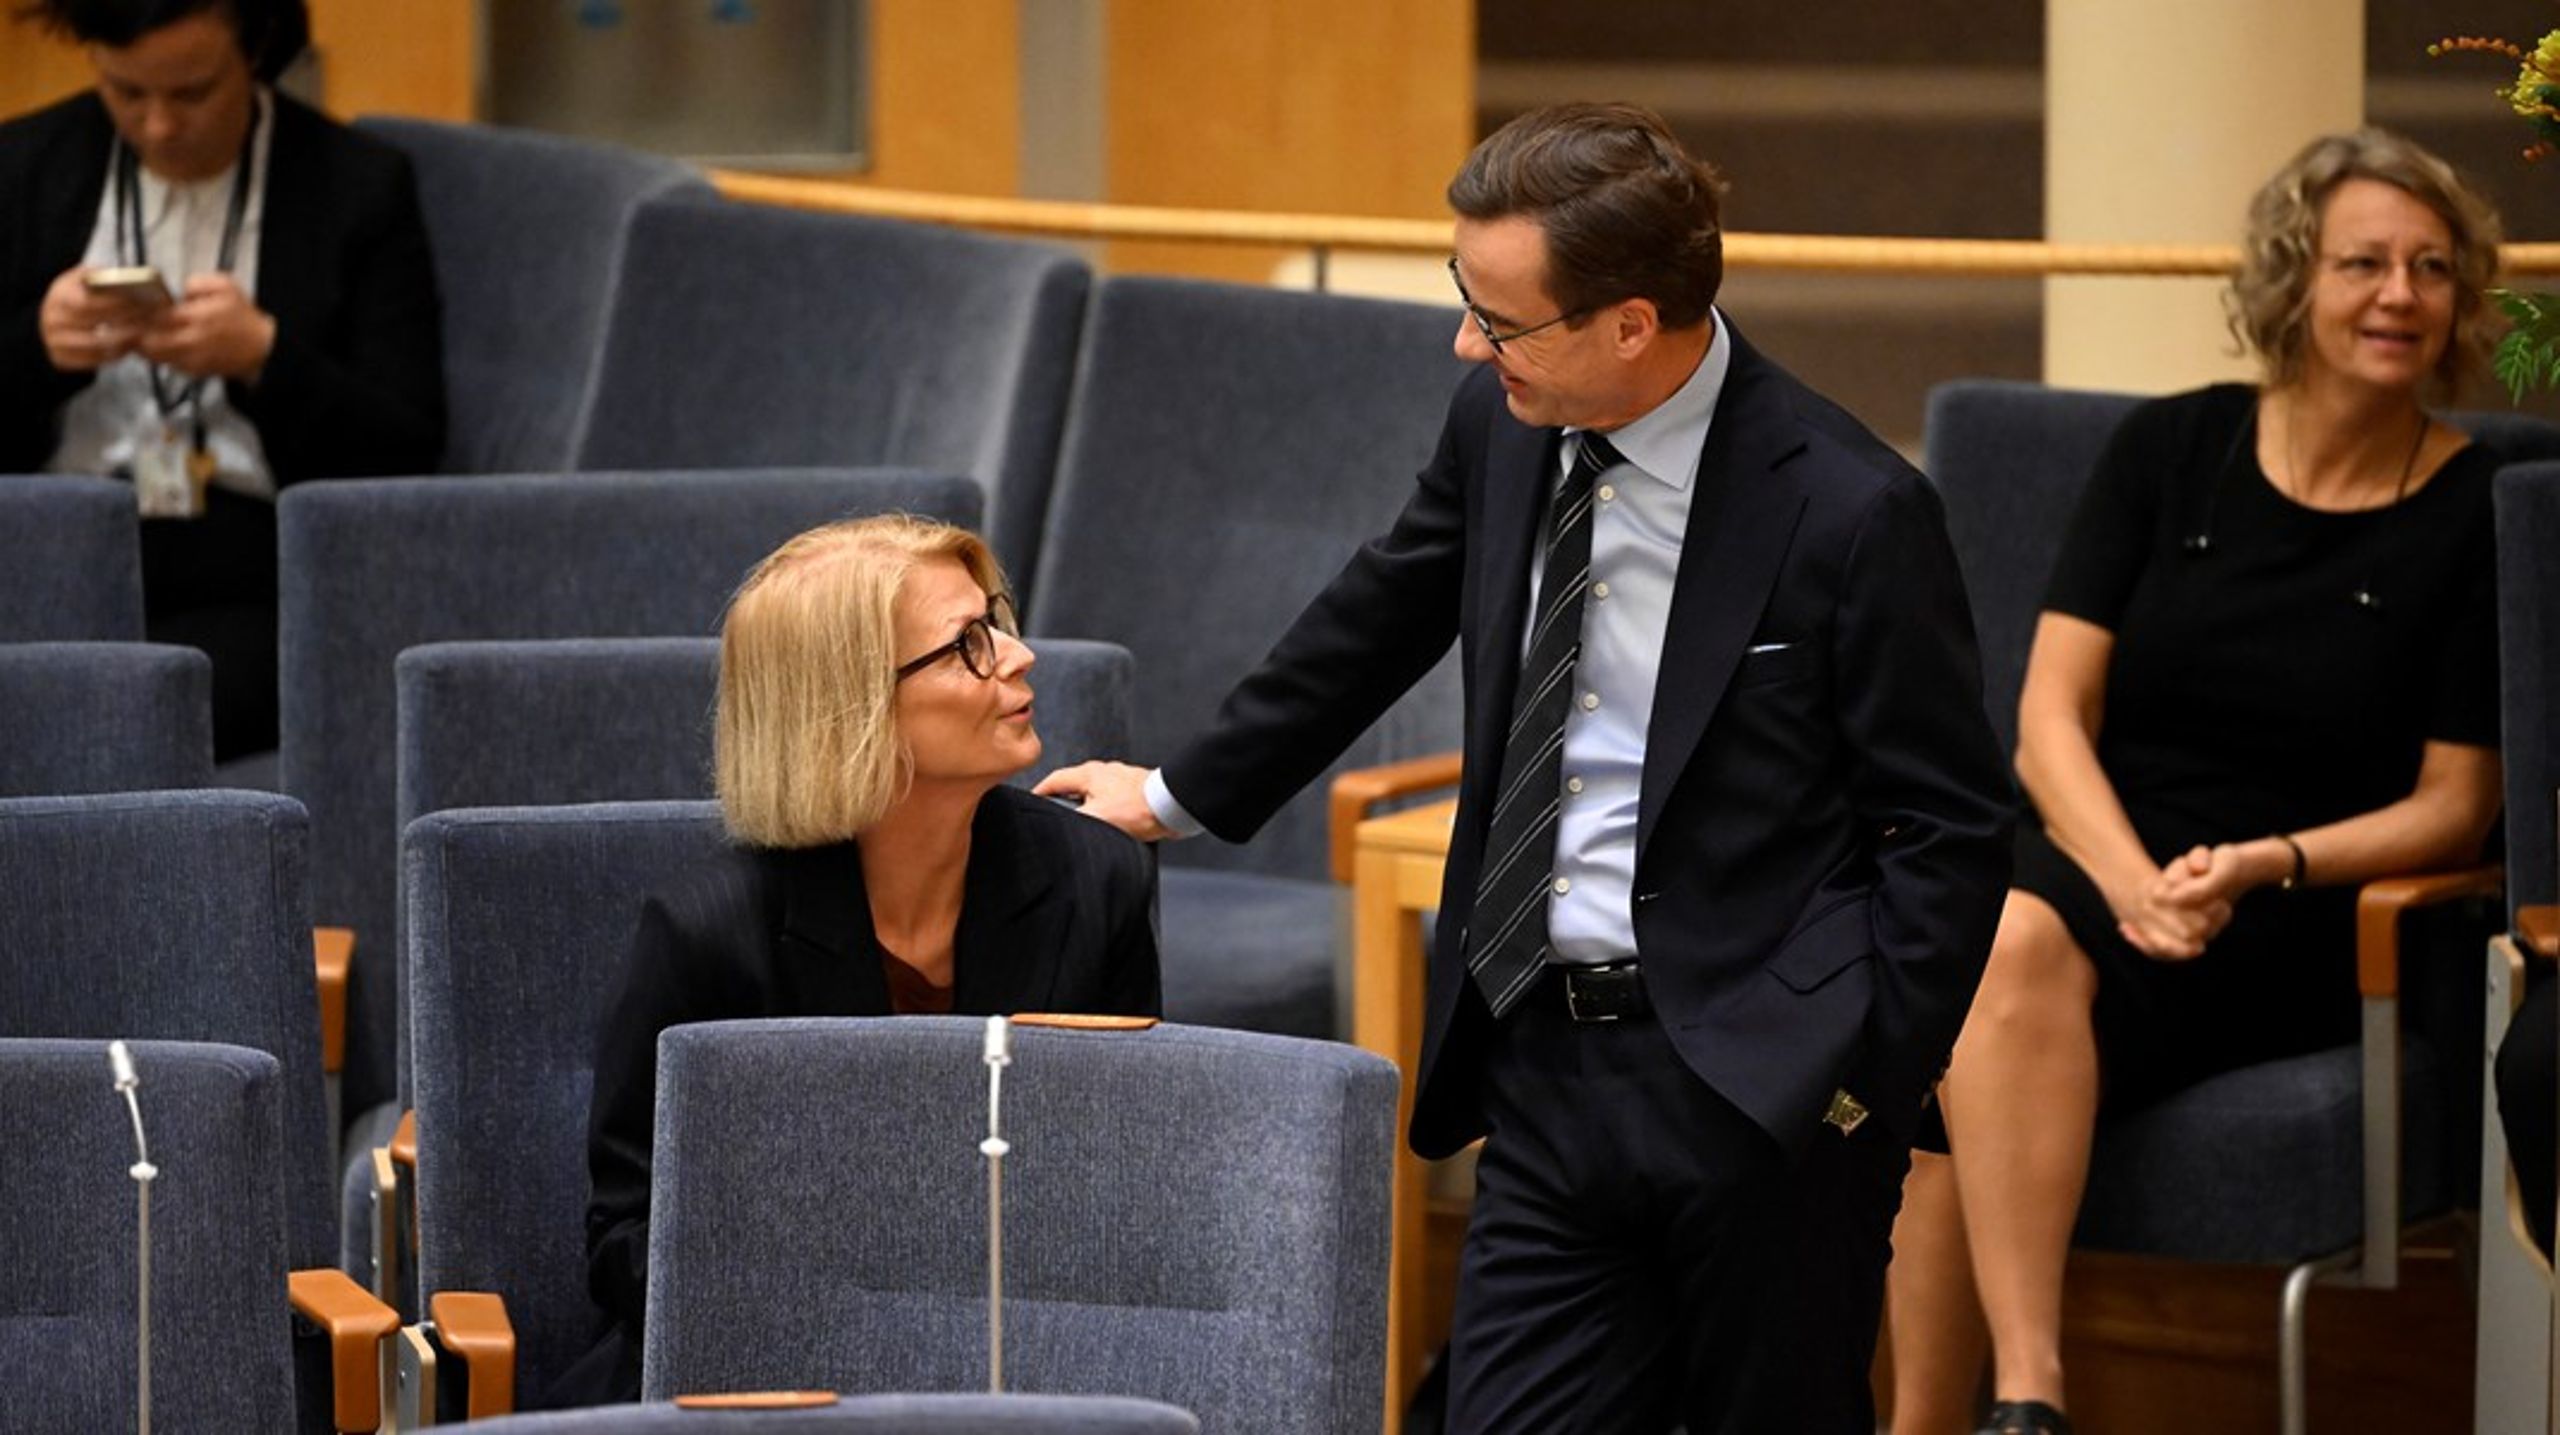 För Ulf Kristersson (M) är det den första riksdagsdebatten som statsminister.